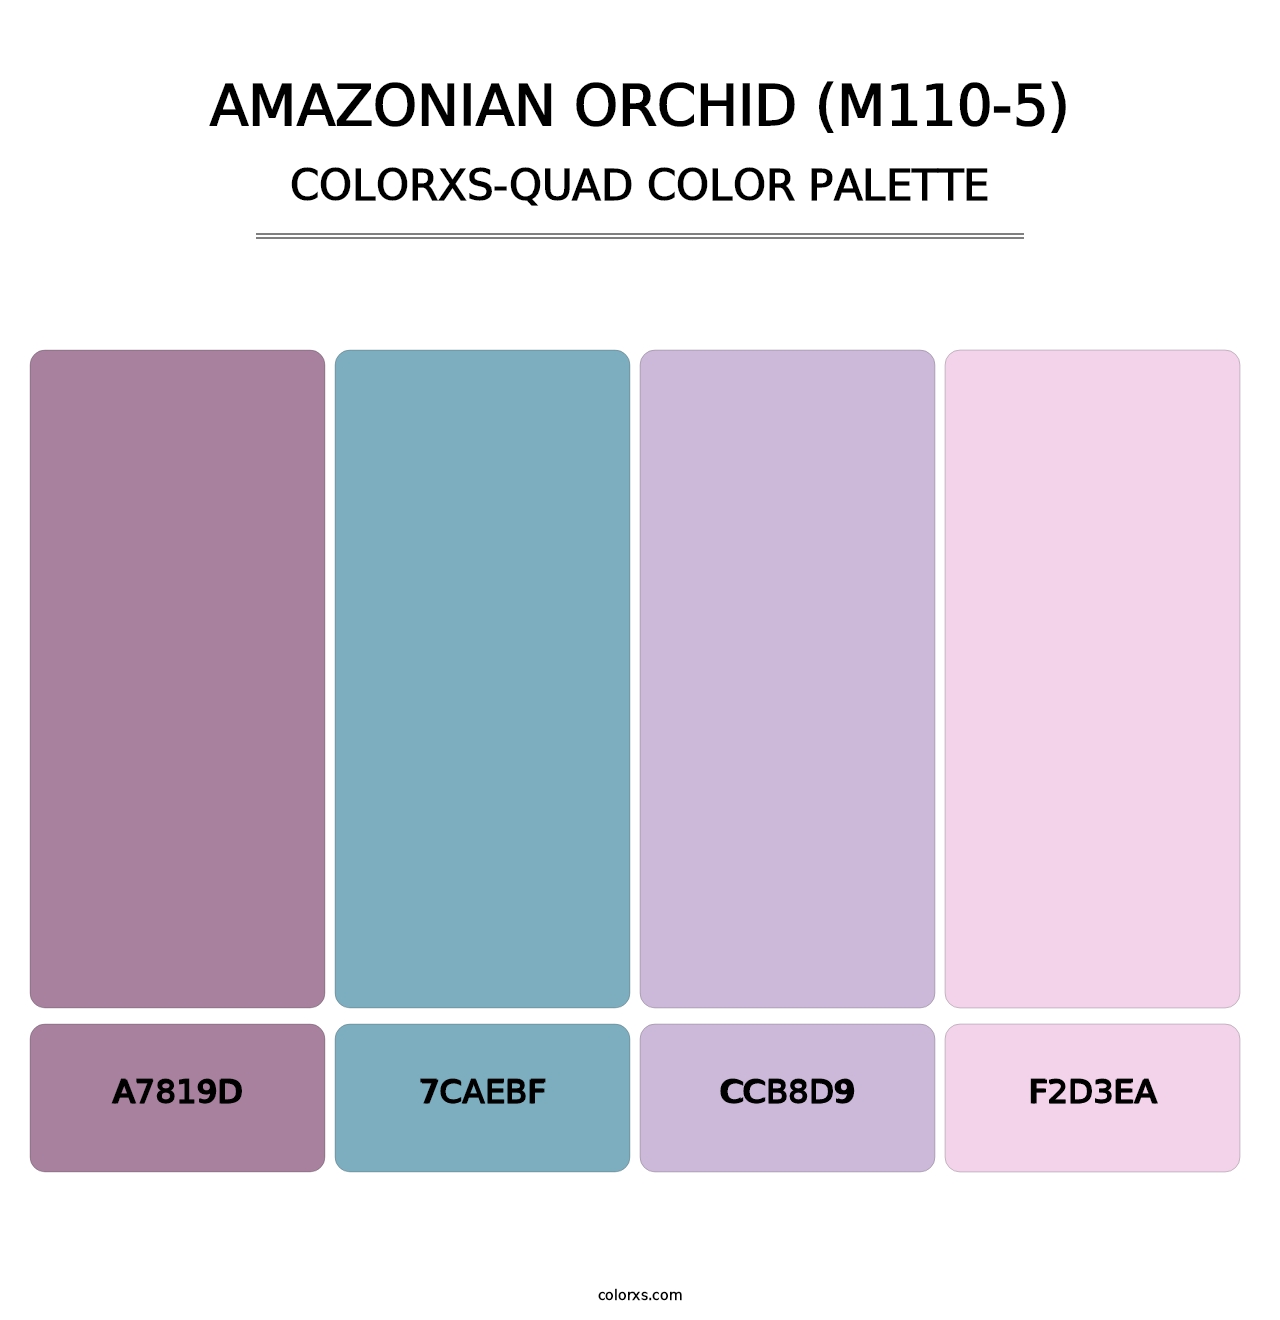 Amazonian Orchid (M110-5) - Colorxs Quad Palette